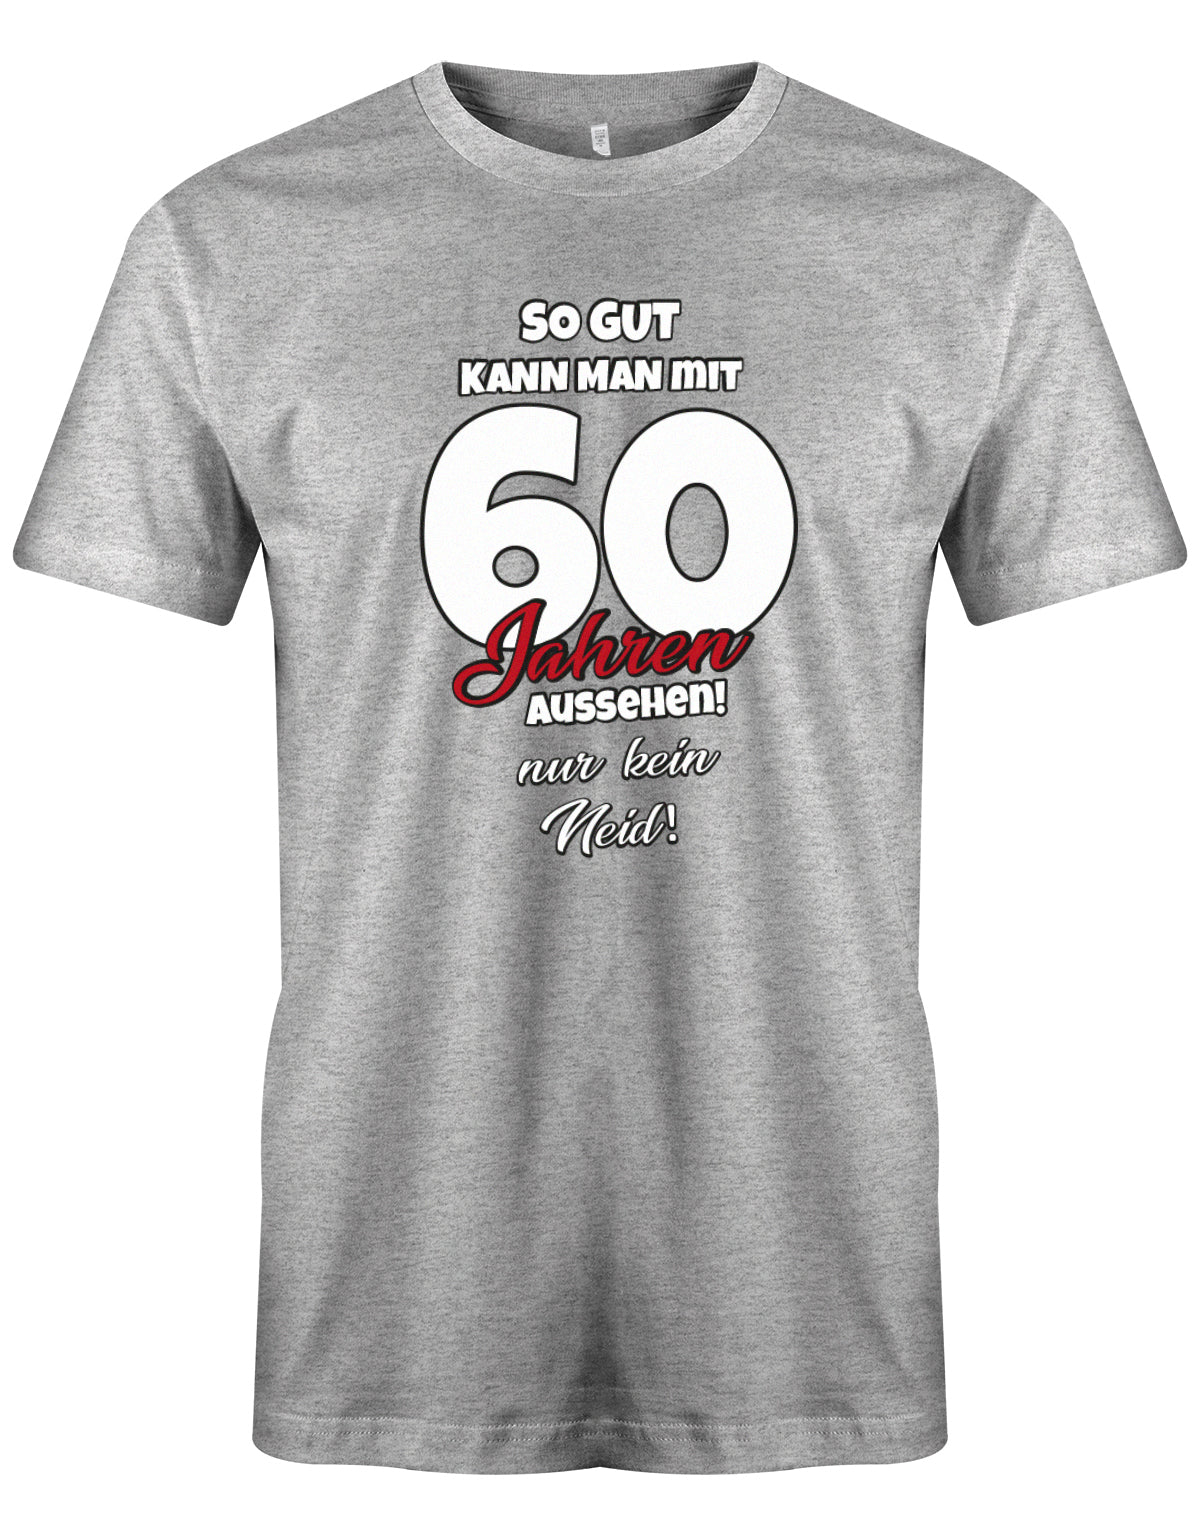 Lustiges T-Shirt zum 60 Geburtstag für den Mann Bedruckt mit So gut kann man mit 60 Jahren aussehen! Nur kein Neid! Grau